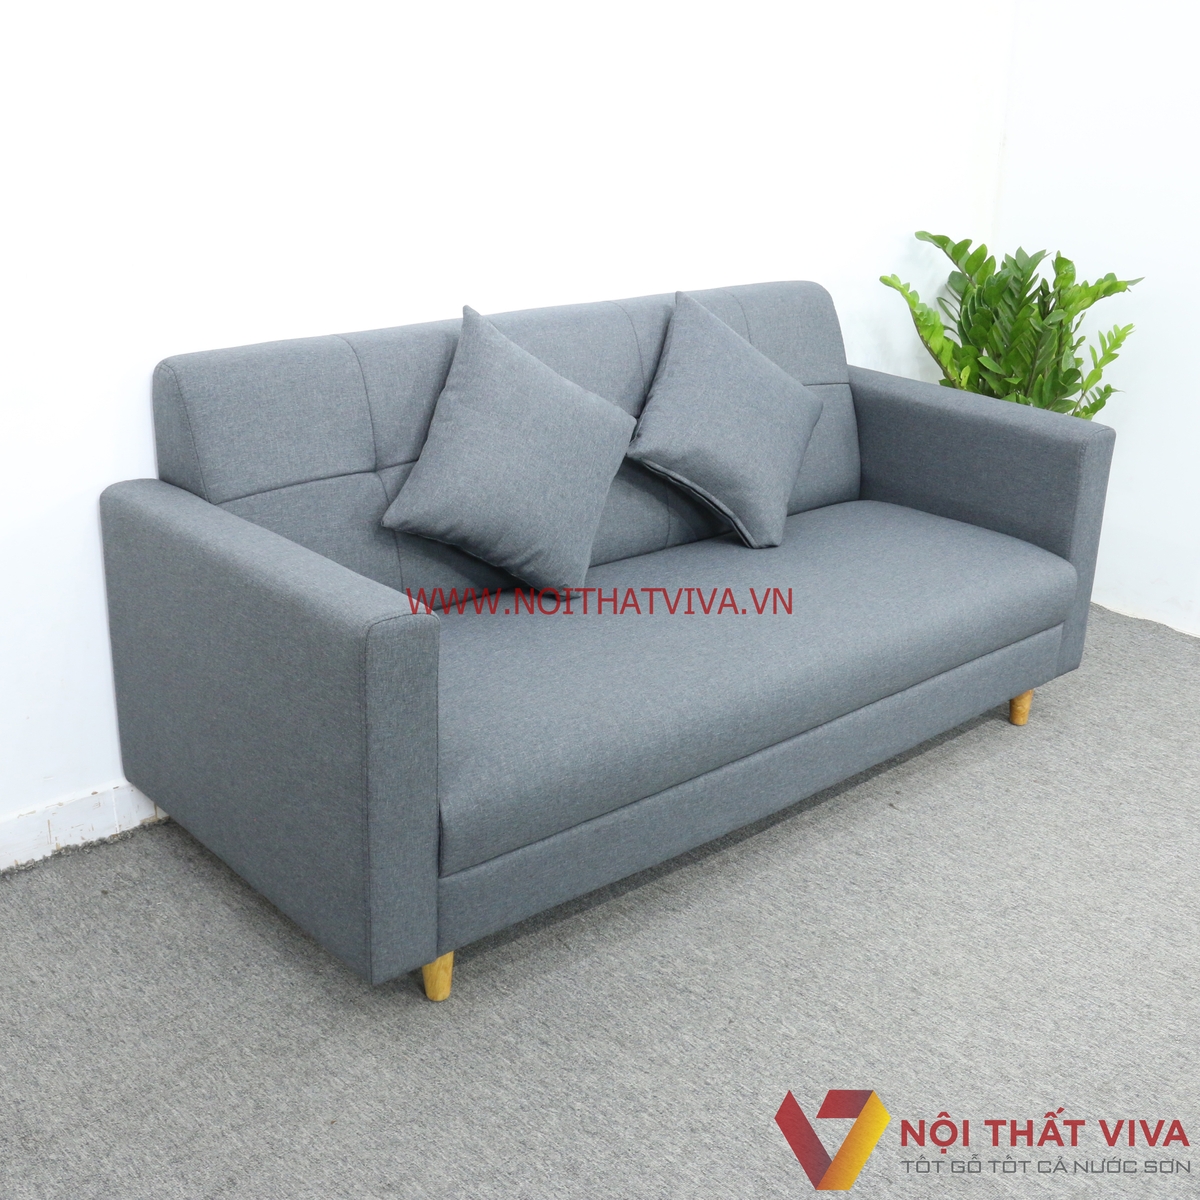 Bộ Bàn Ghế Sofa Mini Nệm Bọc Nỉ Màu Xám 6 Món Gọn Đẹp Hiện Đại Giá Rẻ